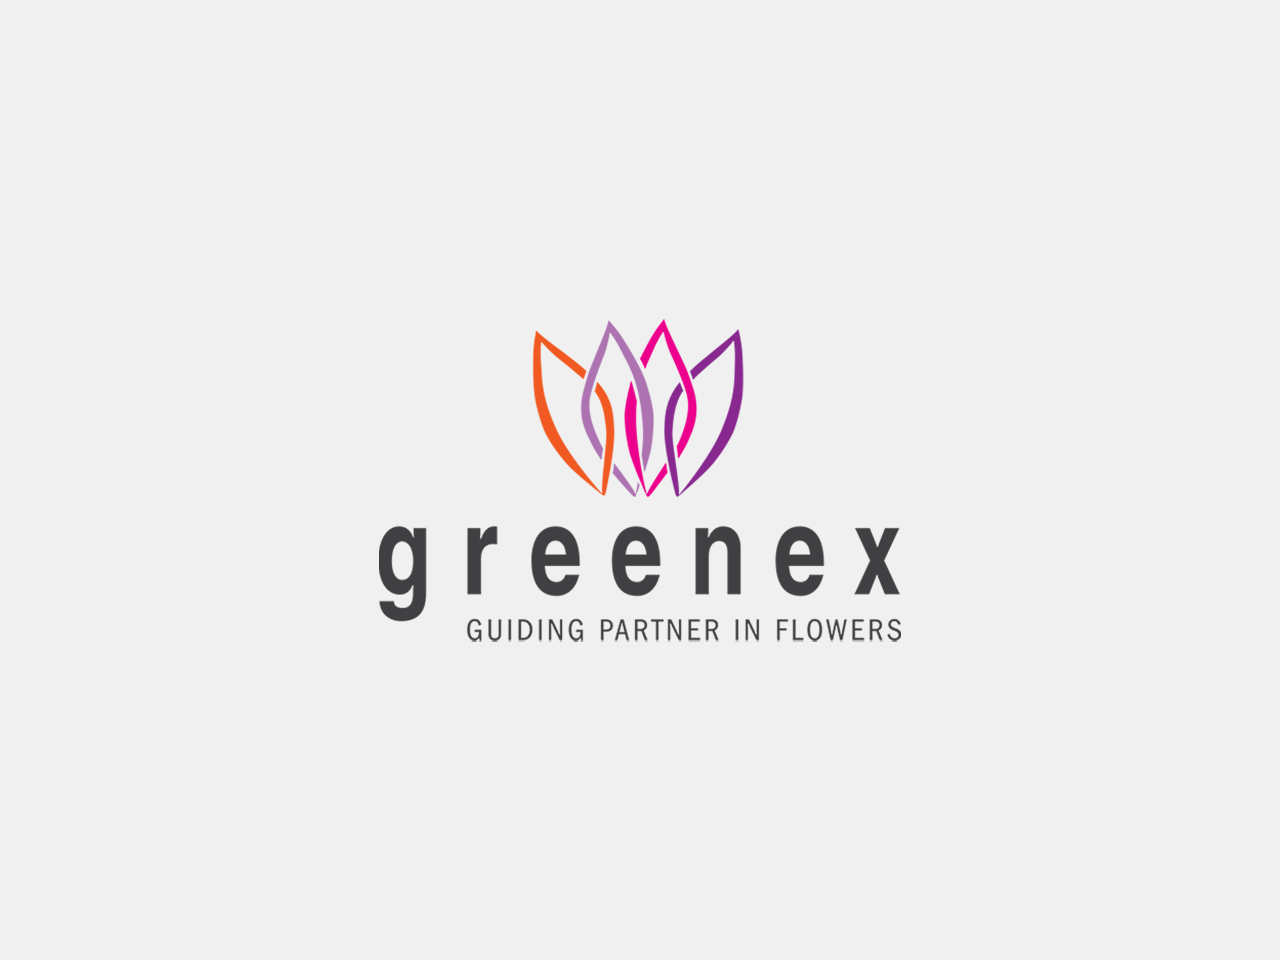 geschiedenis-thefloralconnection-logo-greenex-1280x960px-grijs